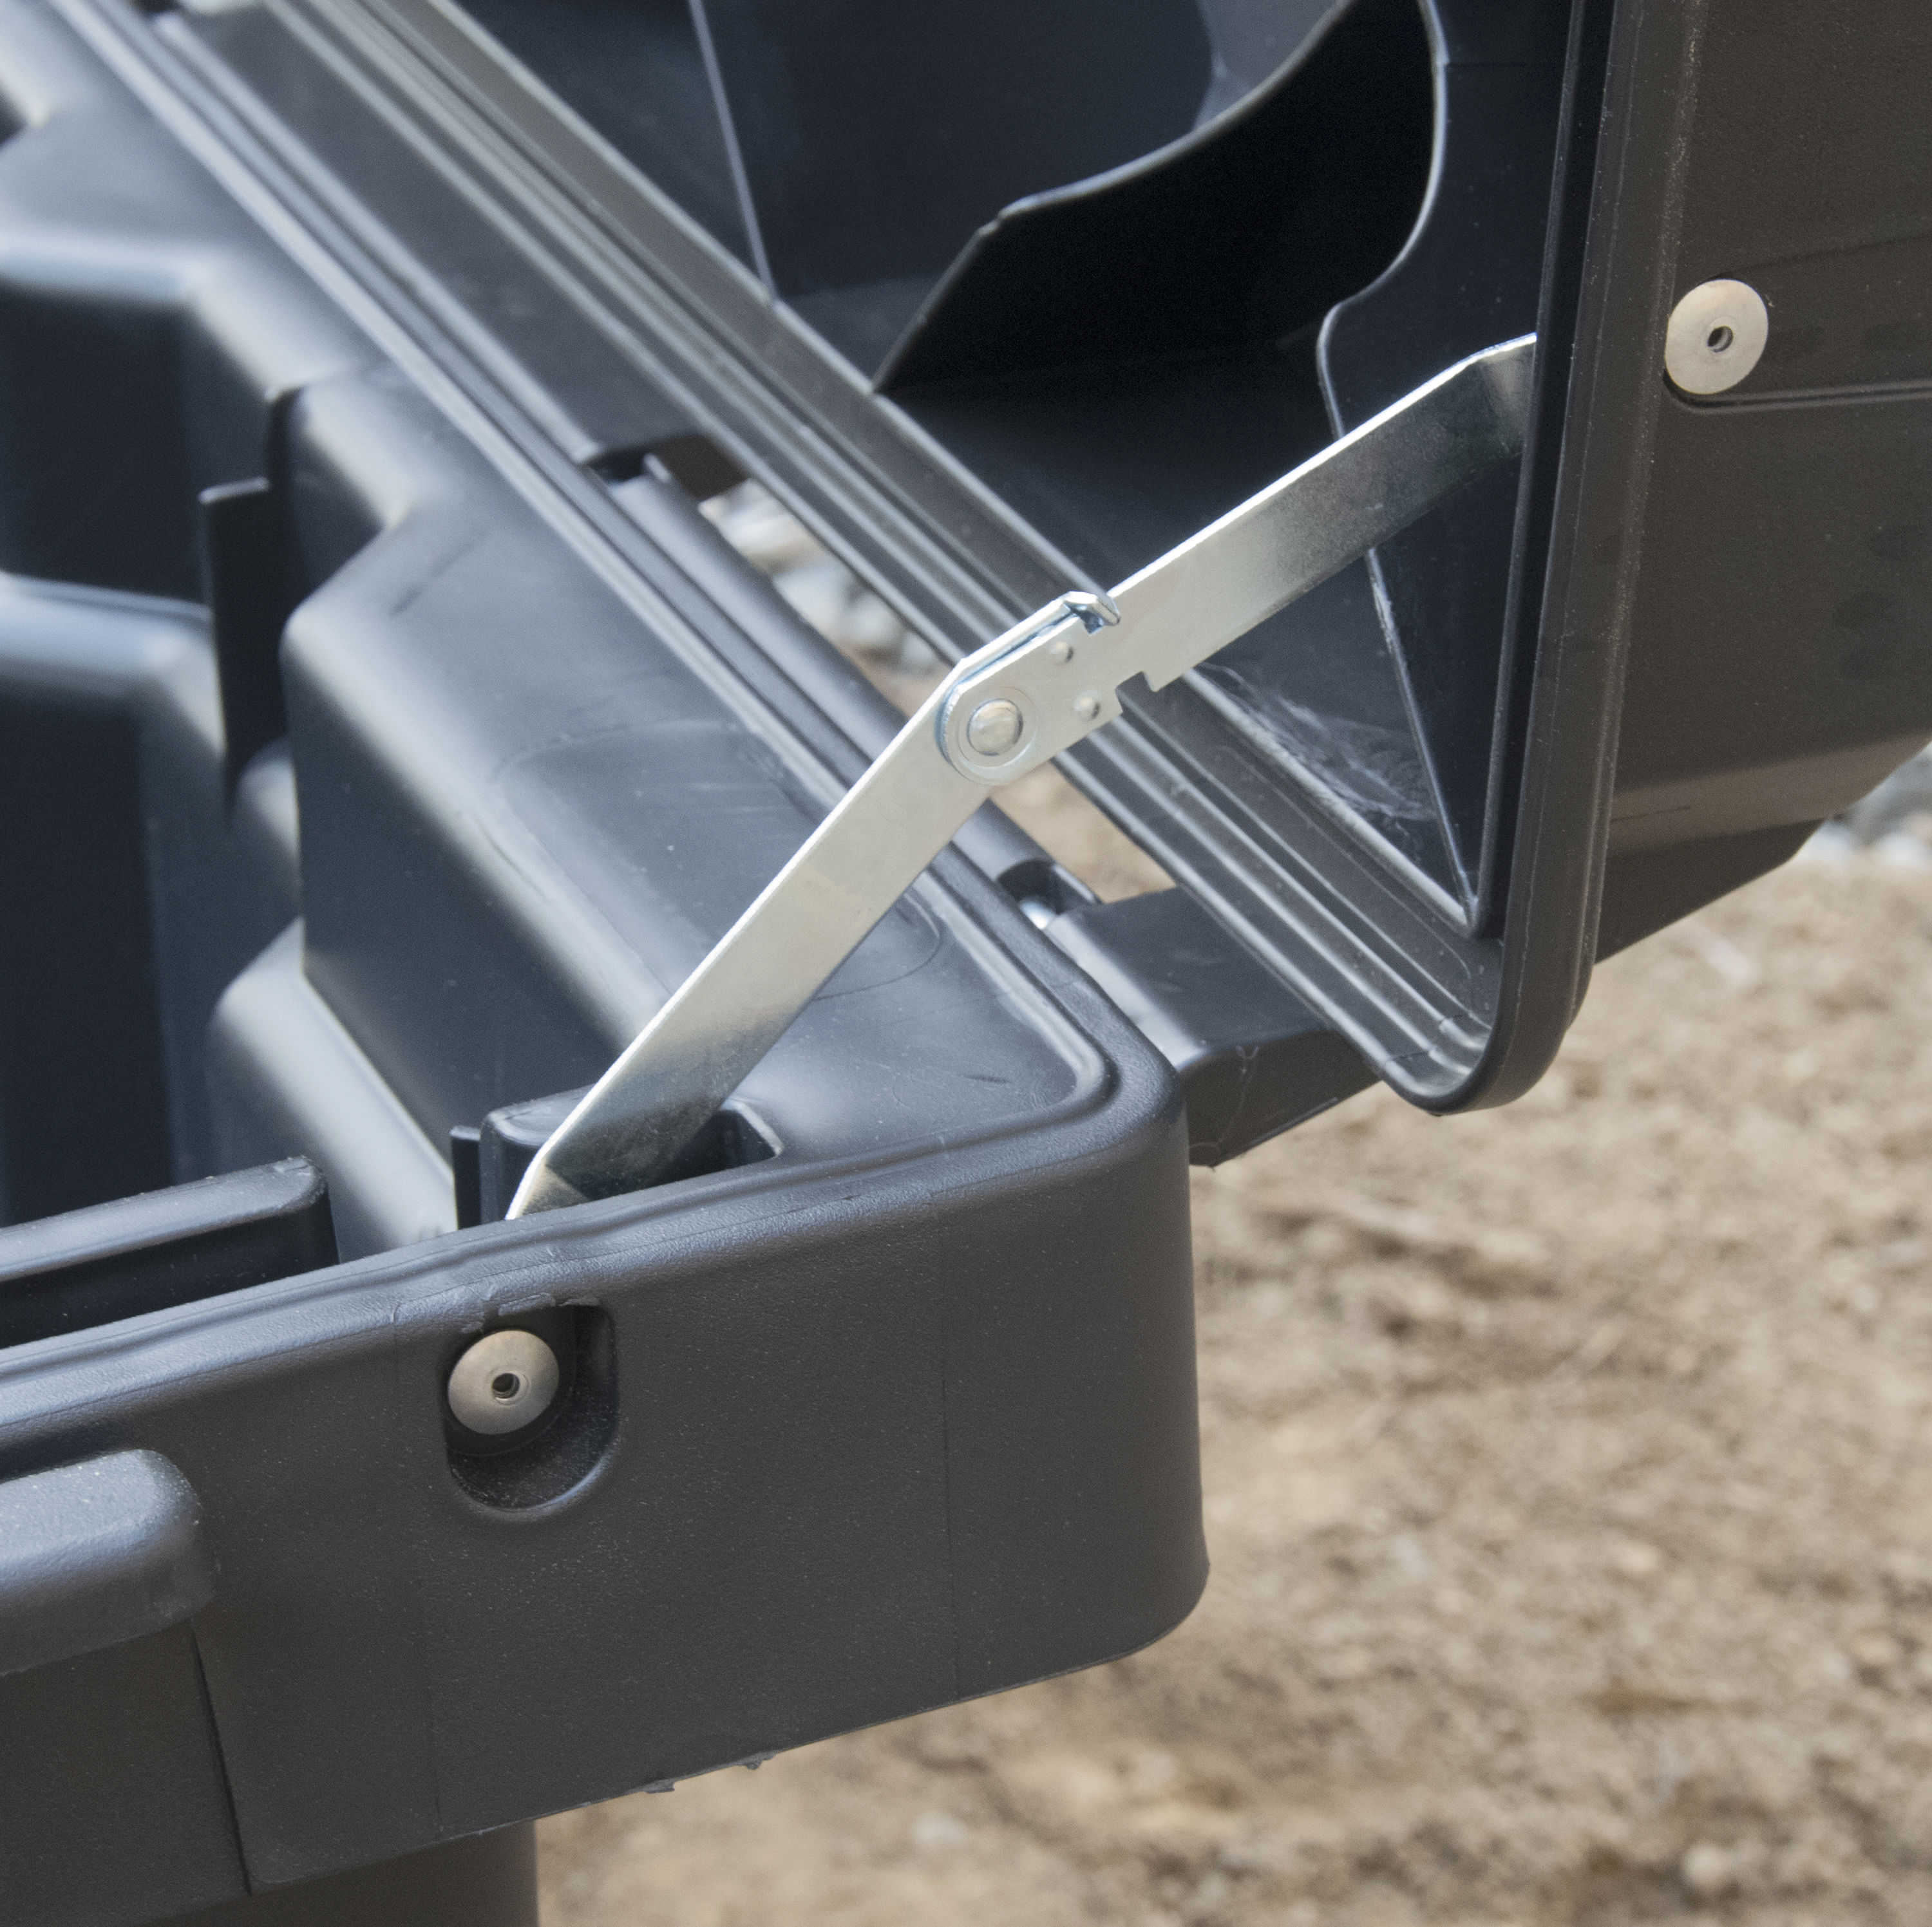 Blue Hawk 31.75-in Black Plastic Wheels Lockable Tool Box at